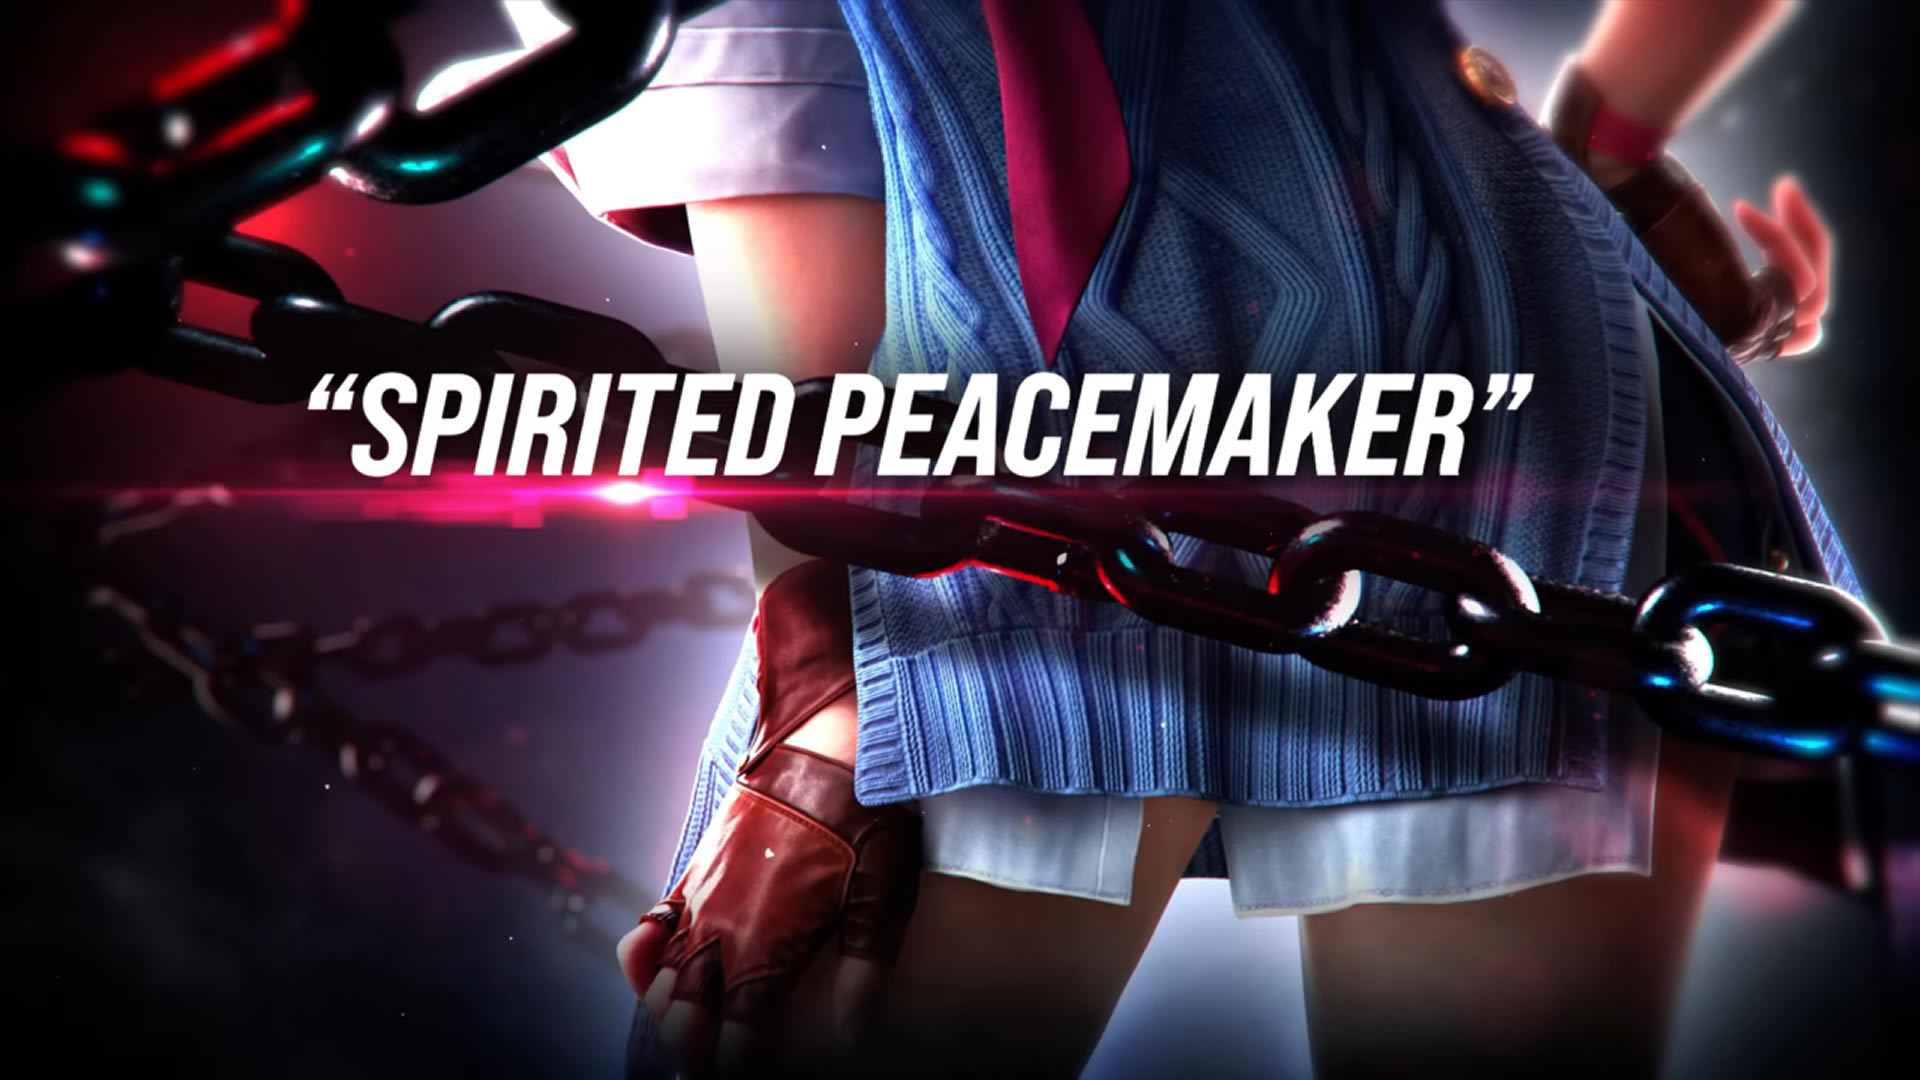 Tekken 8: Asuka Kazama e Leroy Smith são revelados para o jogo